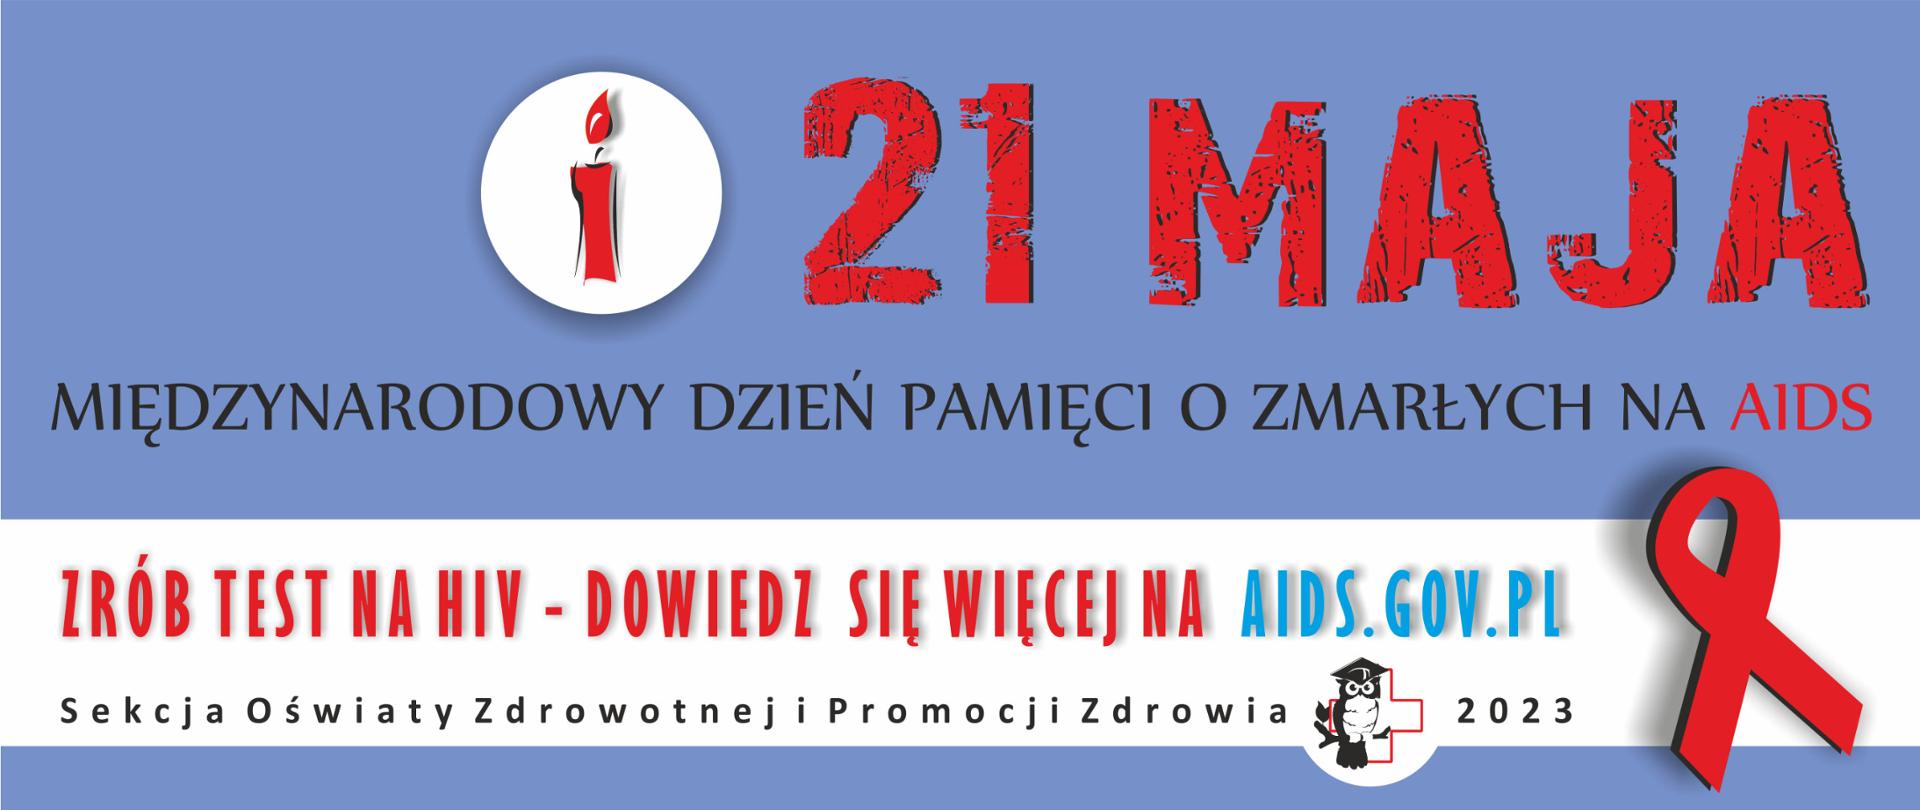 Niebieski baner z czerwoną świeczką na tle białego koła. Napis na banerze: Zrób test na hiv - dowiedz się więcej na aids.gov.pl.